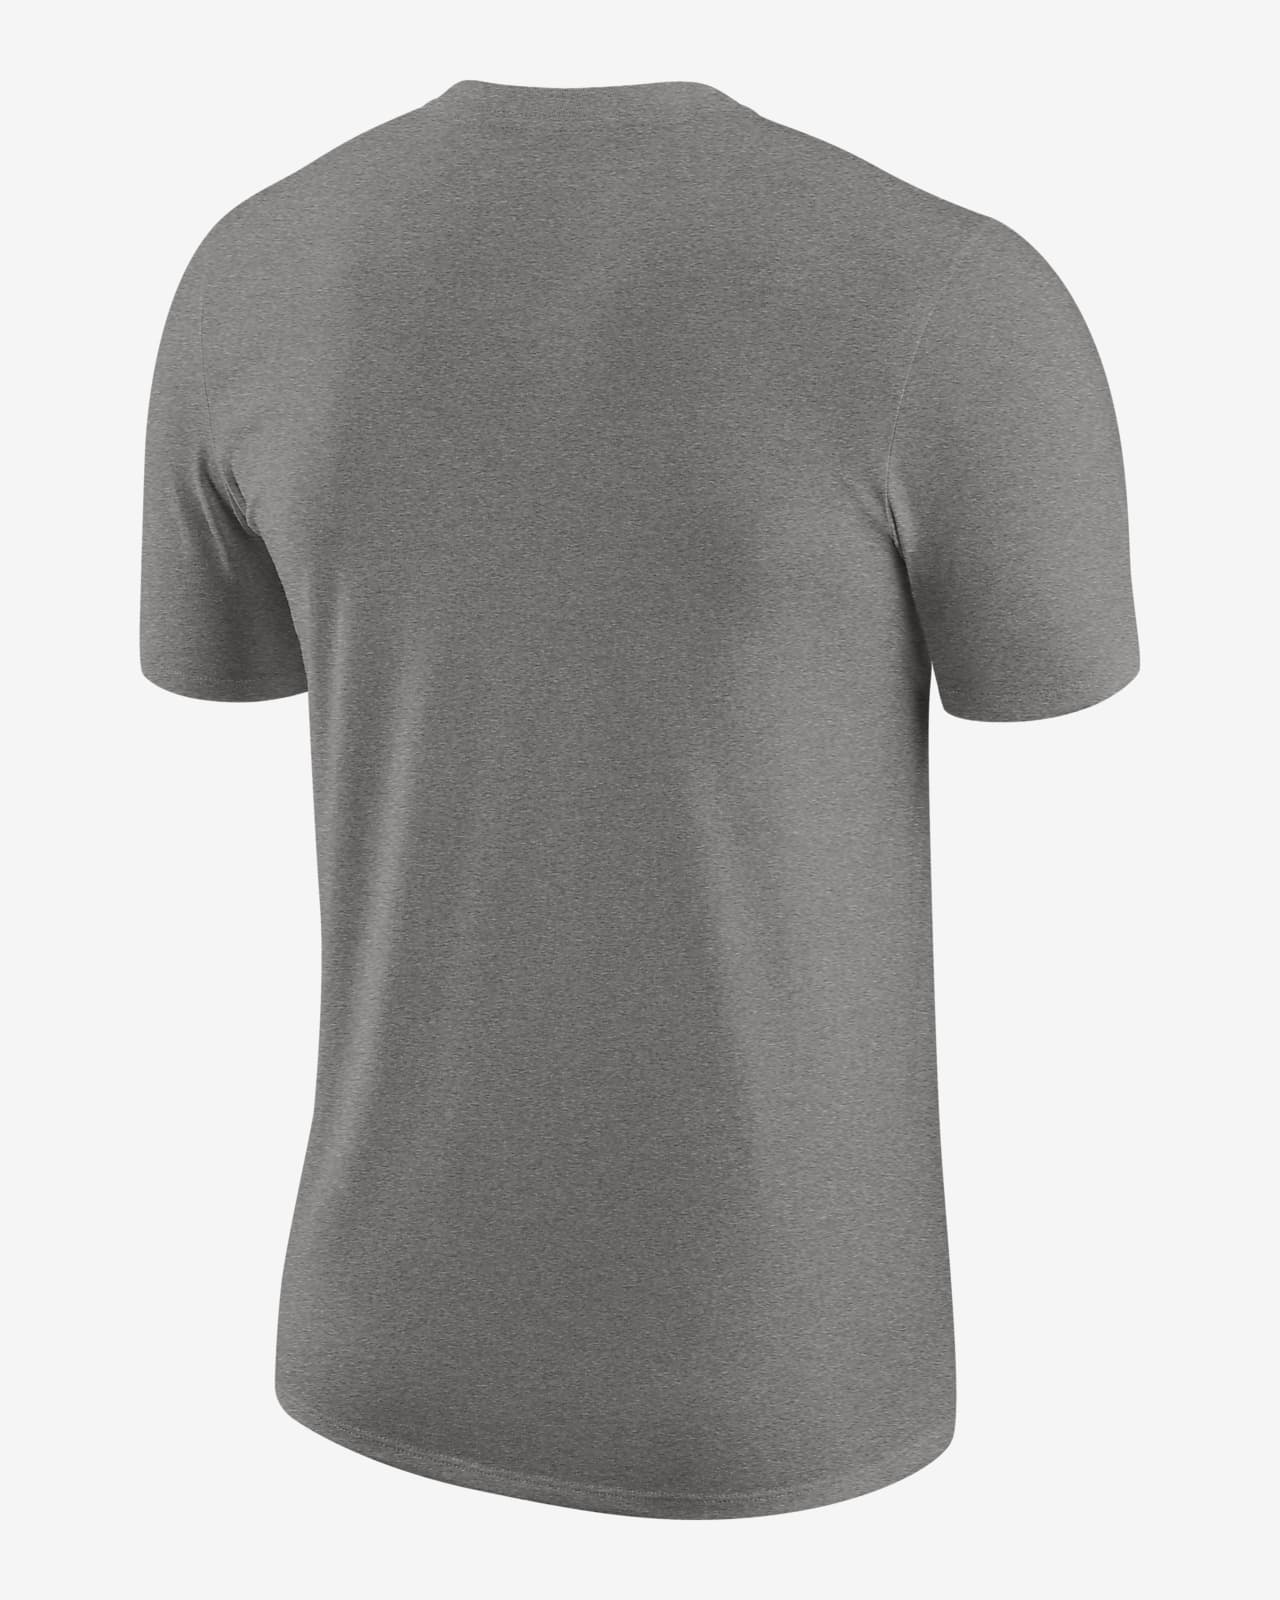 Mens Adidas Orlando Magic Performance Shirt Large Gray Long Sleeve  NBAfusion